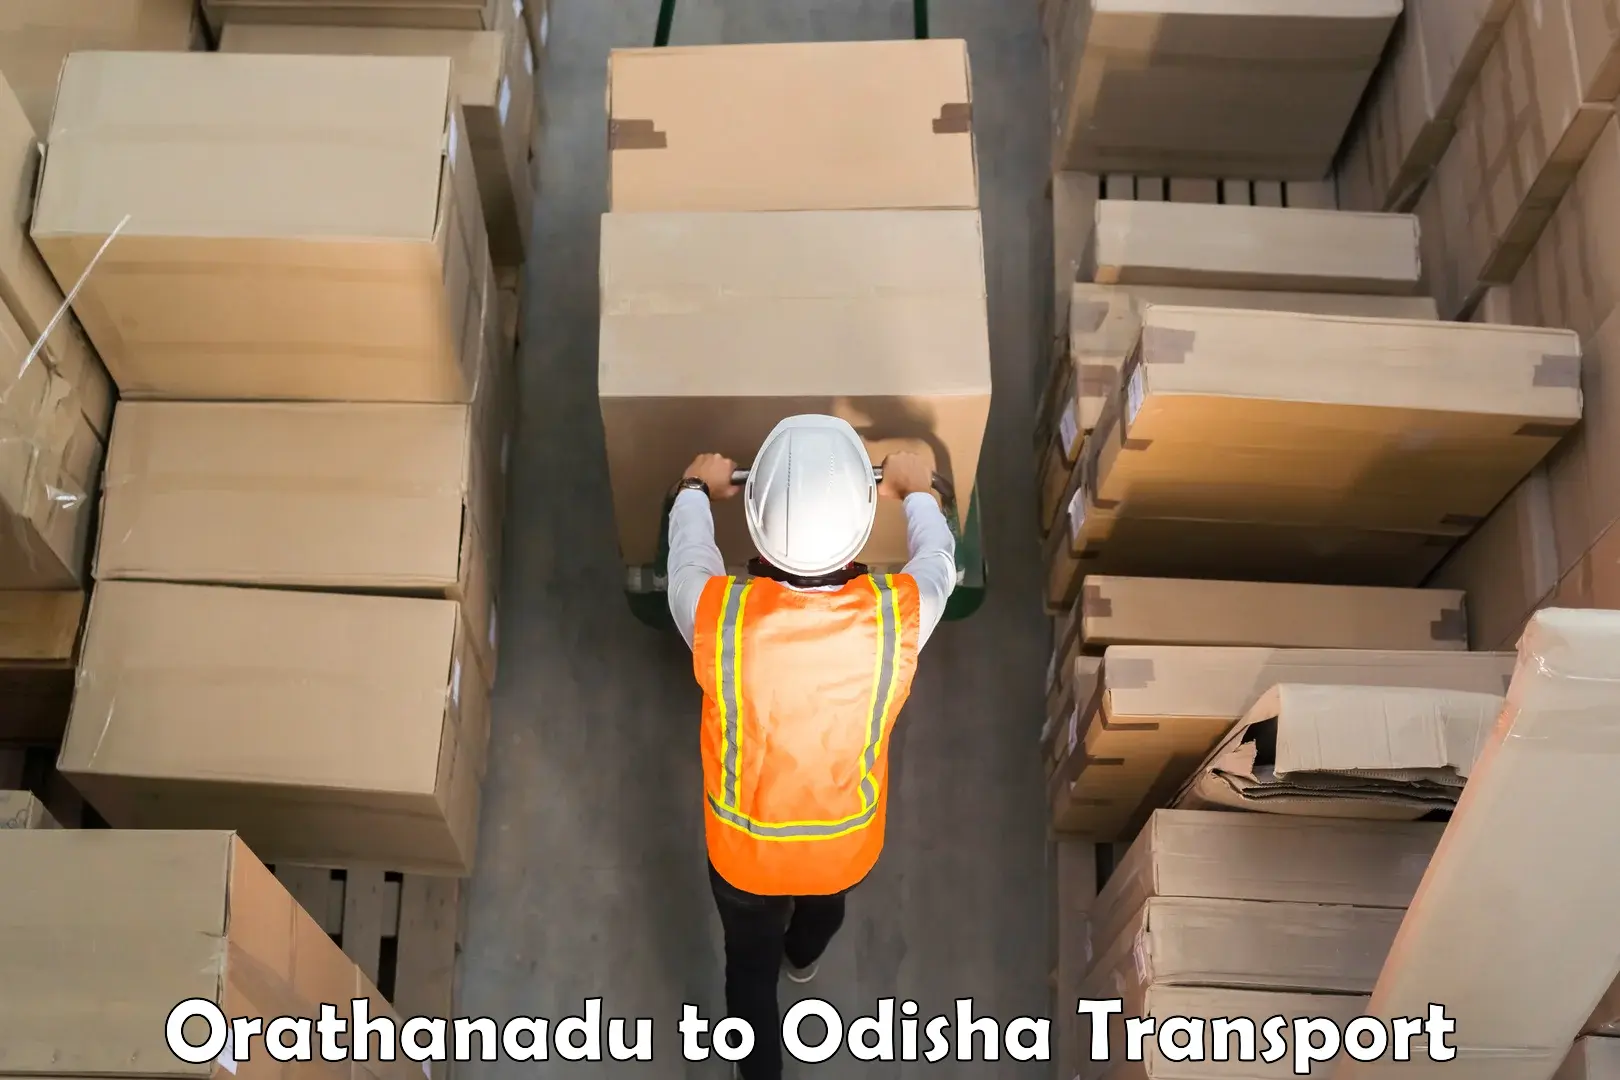 Commercial transport service Orathanadu to Bheden